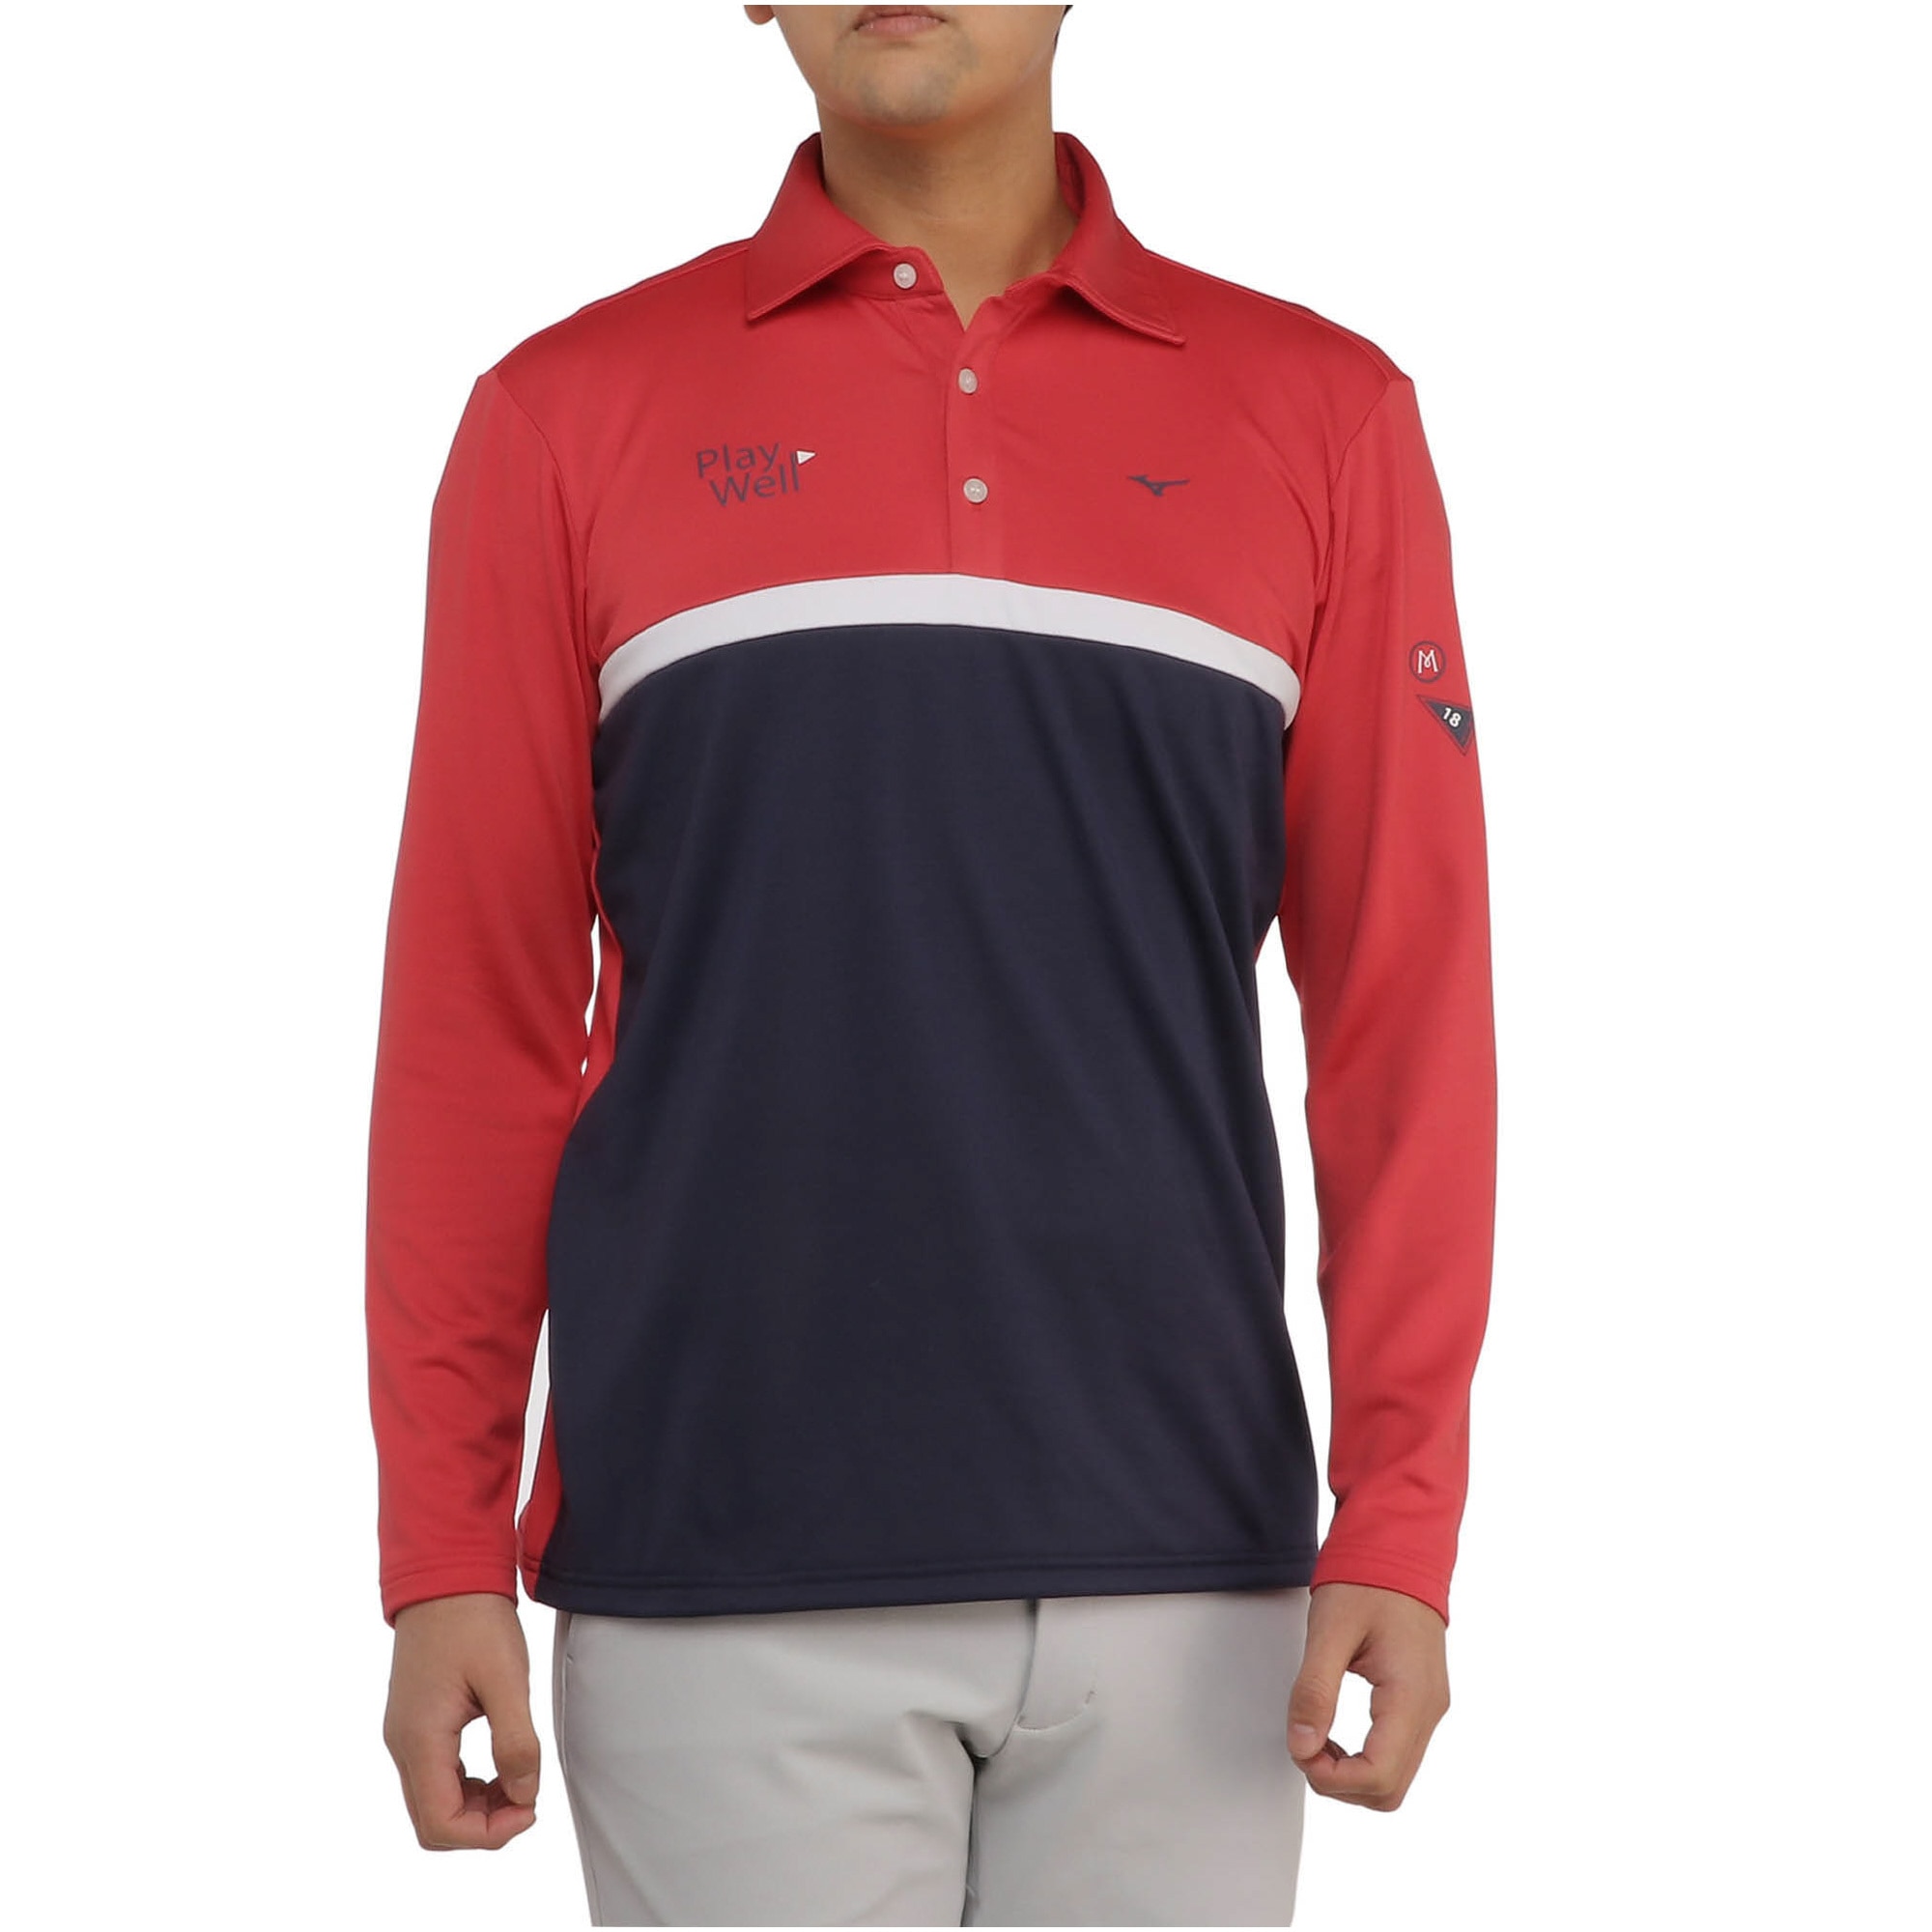 共衿プリントシャツ[メンズ]|E2MAA521|長袖シャツ|ゴルフウエア|ミズノ